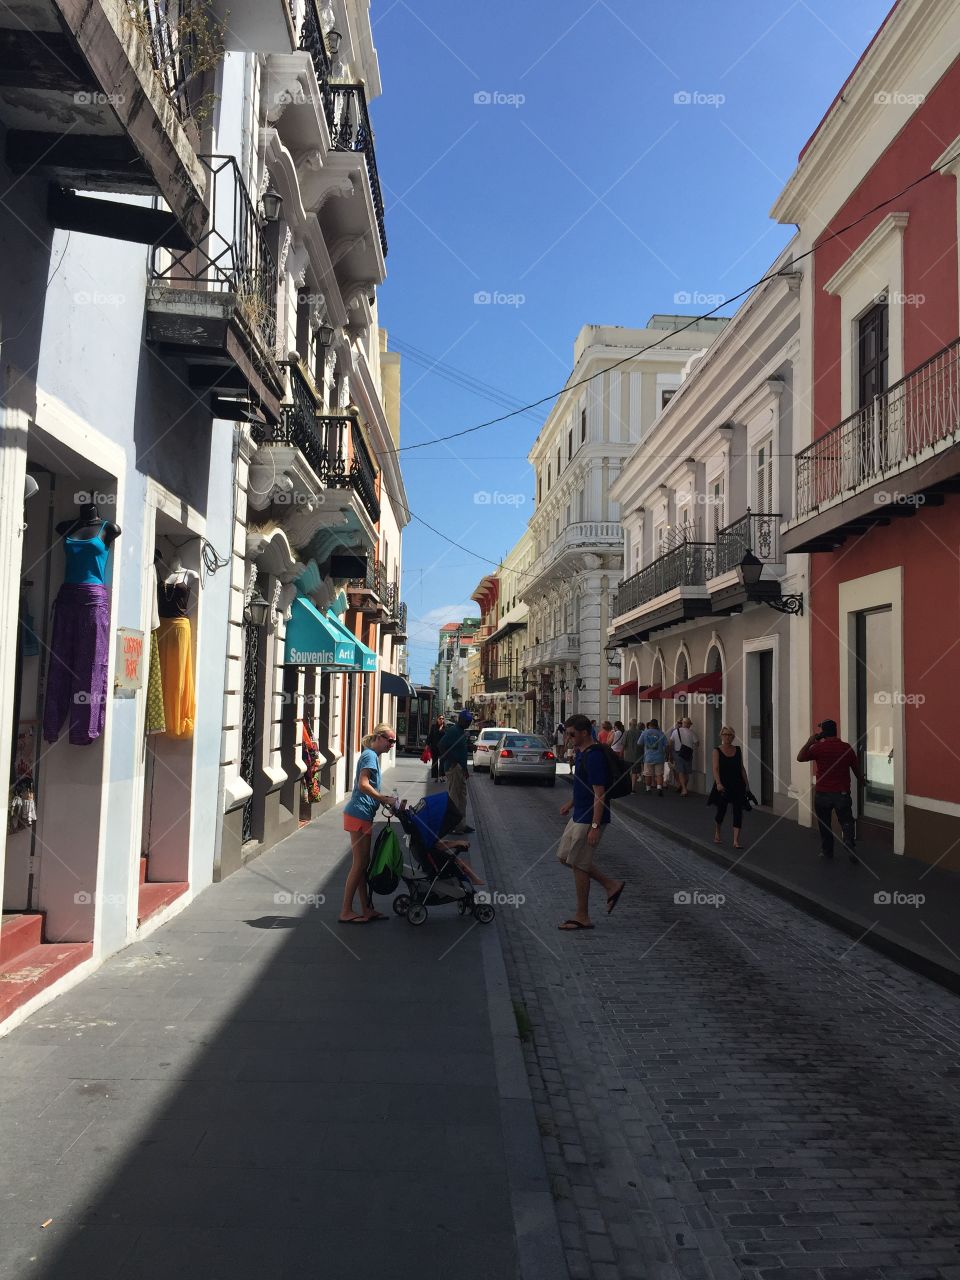 Downtown San Juan